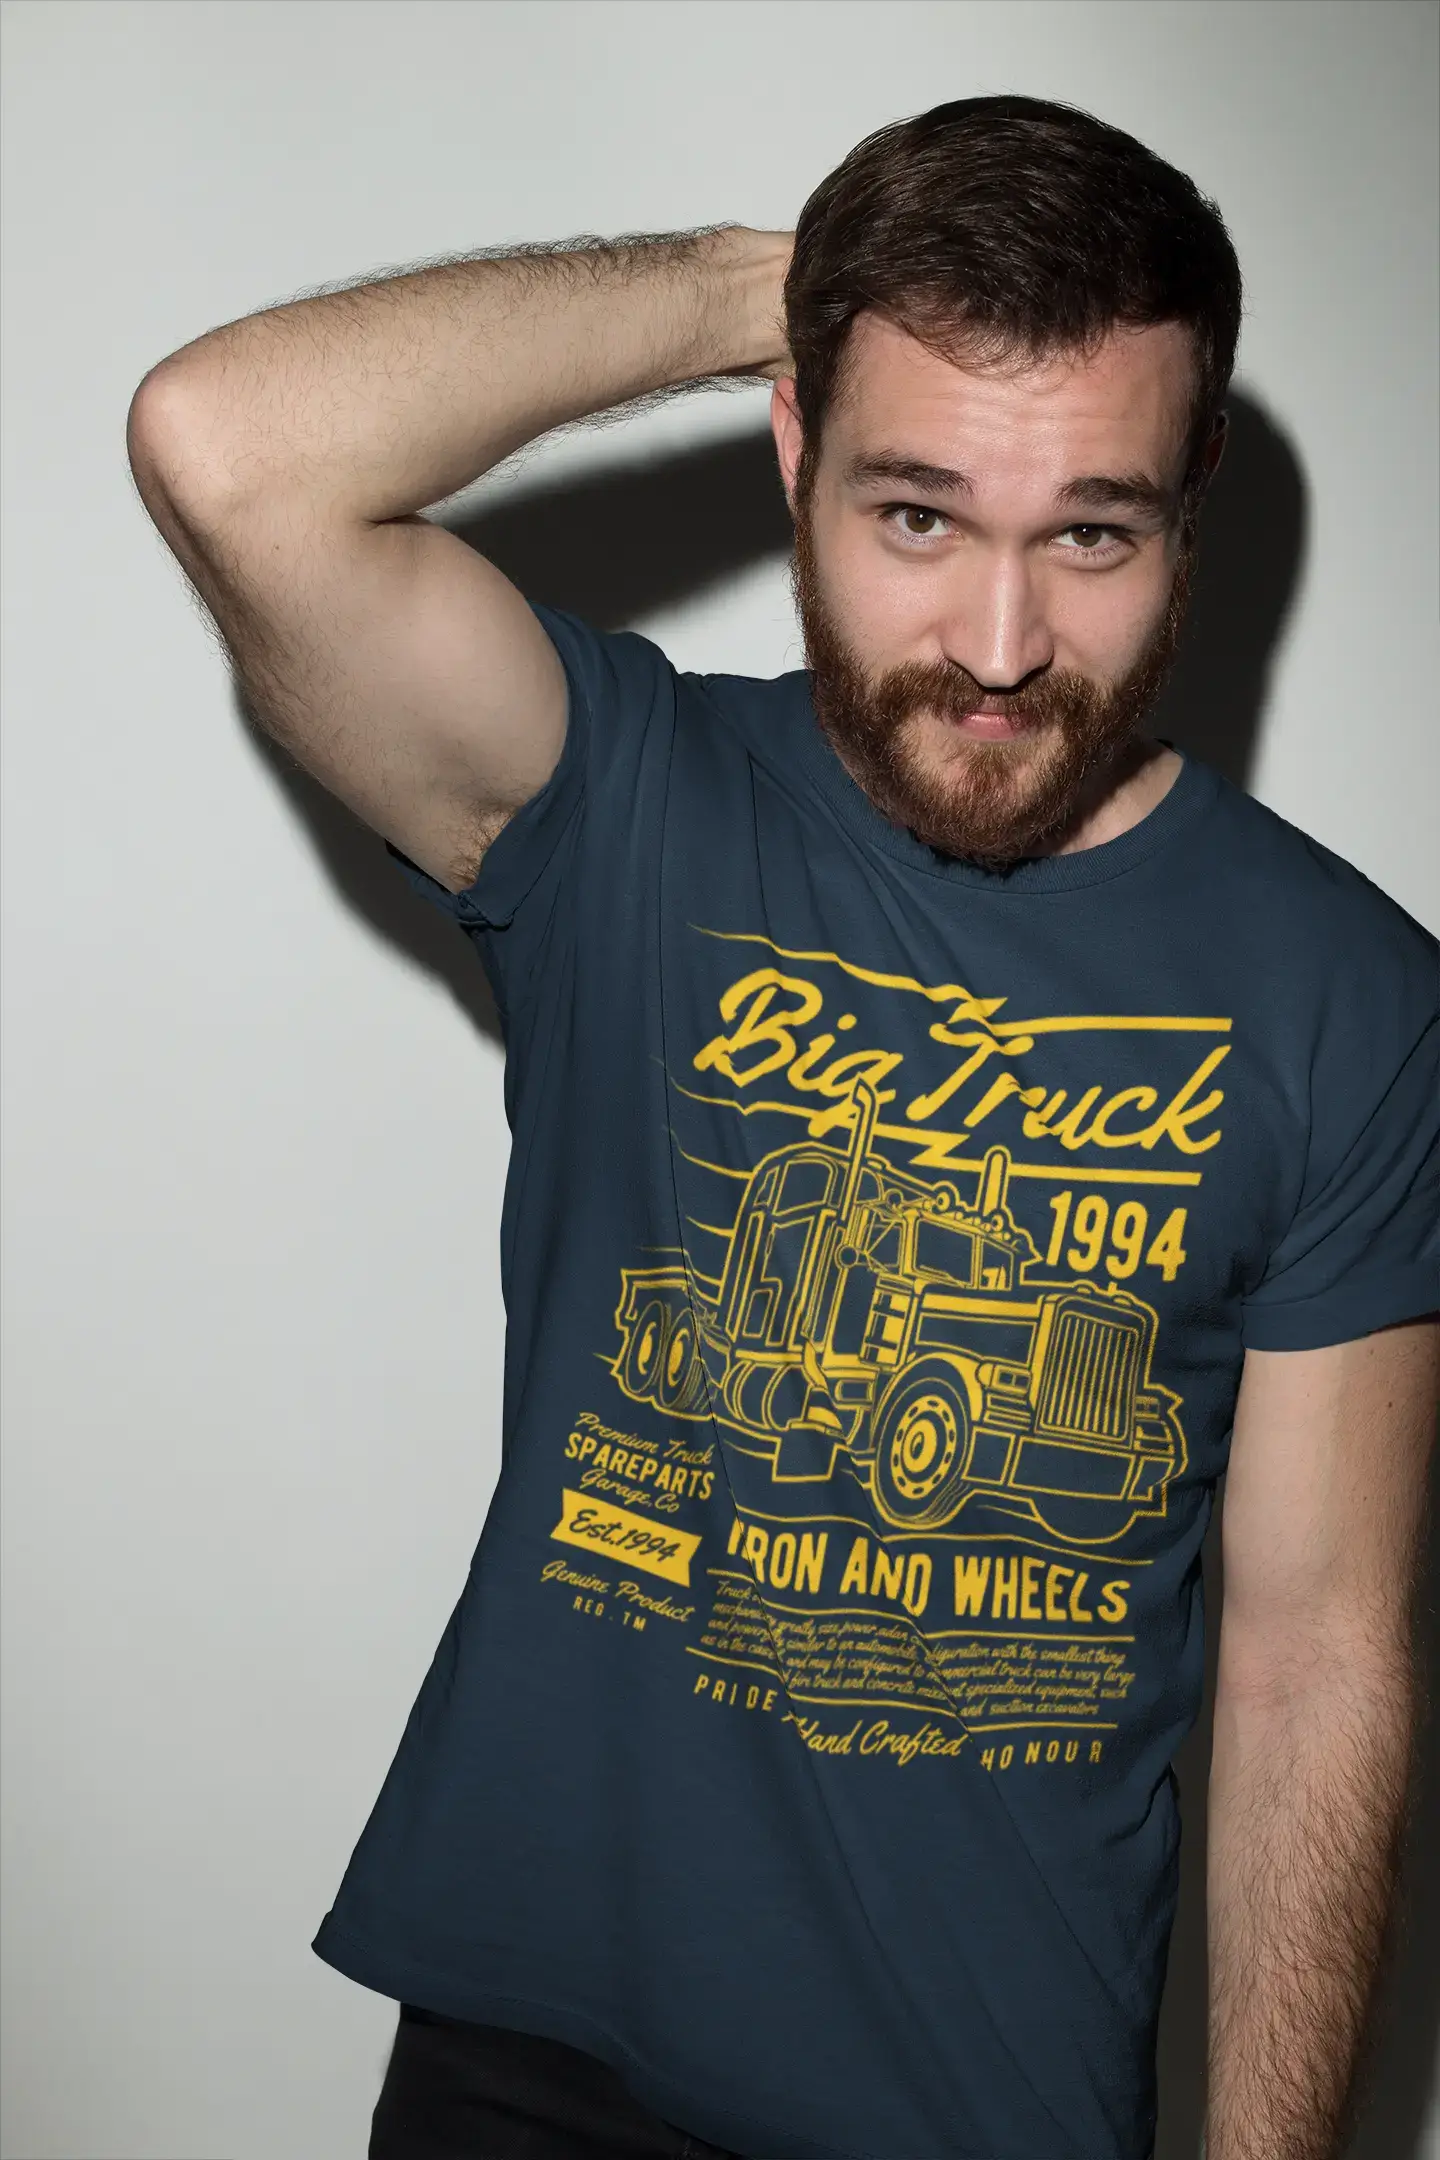 ULTRABASIC Men's T-Shirt Big Truck Since 1994 - Shirt for Truck Drivers